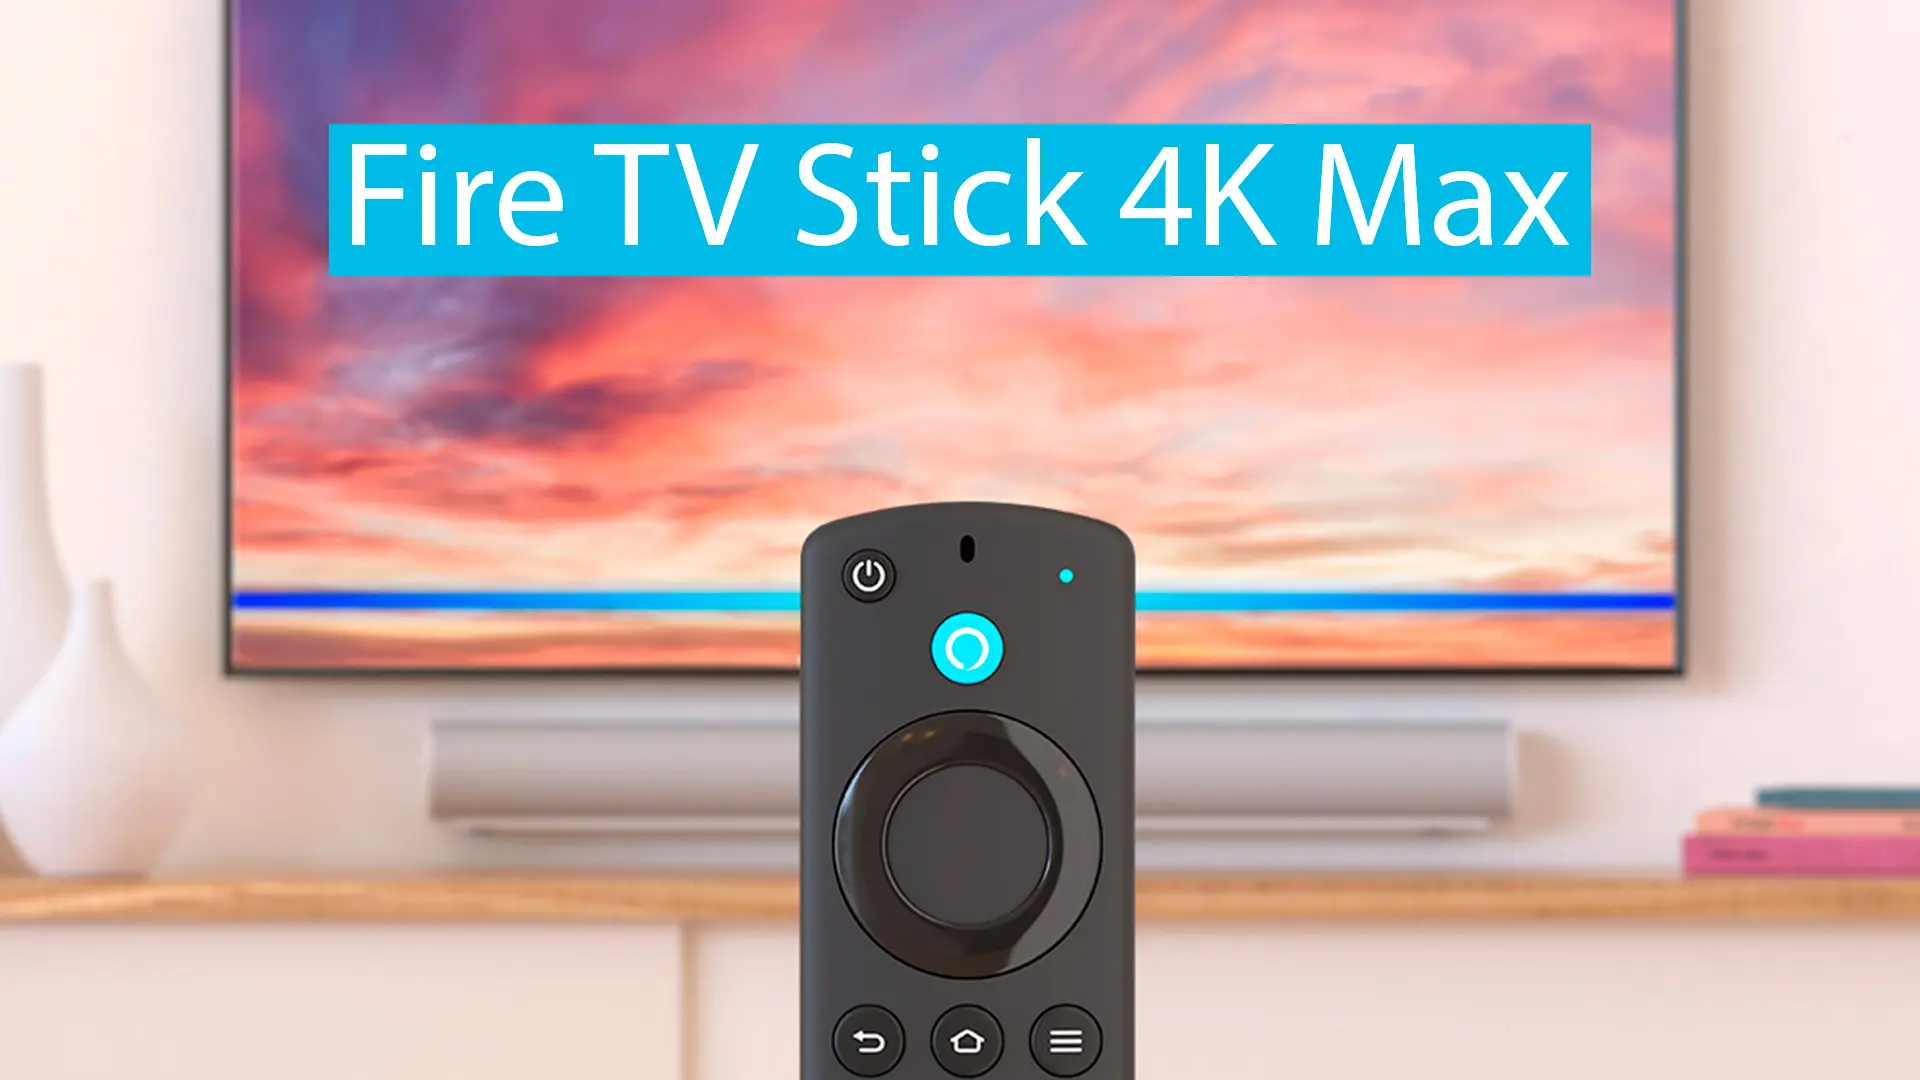 Reseña del Amazon Fire TV Stick 4K Max: calidad, imagen y rendimiento